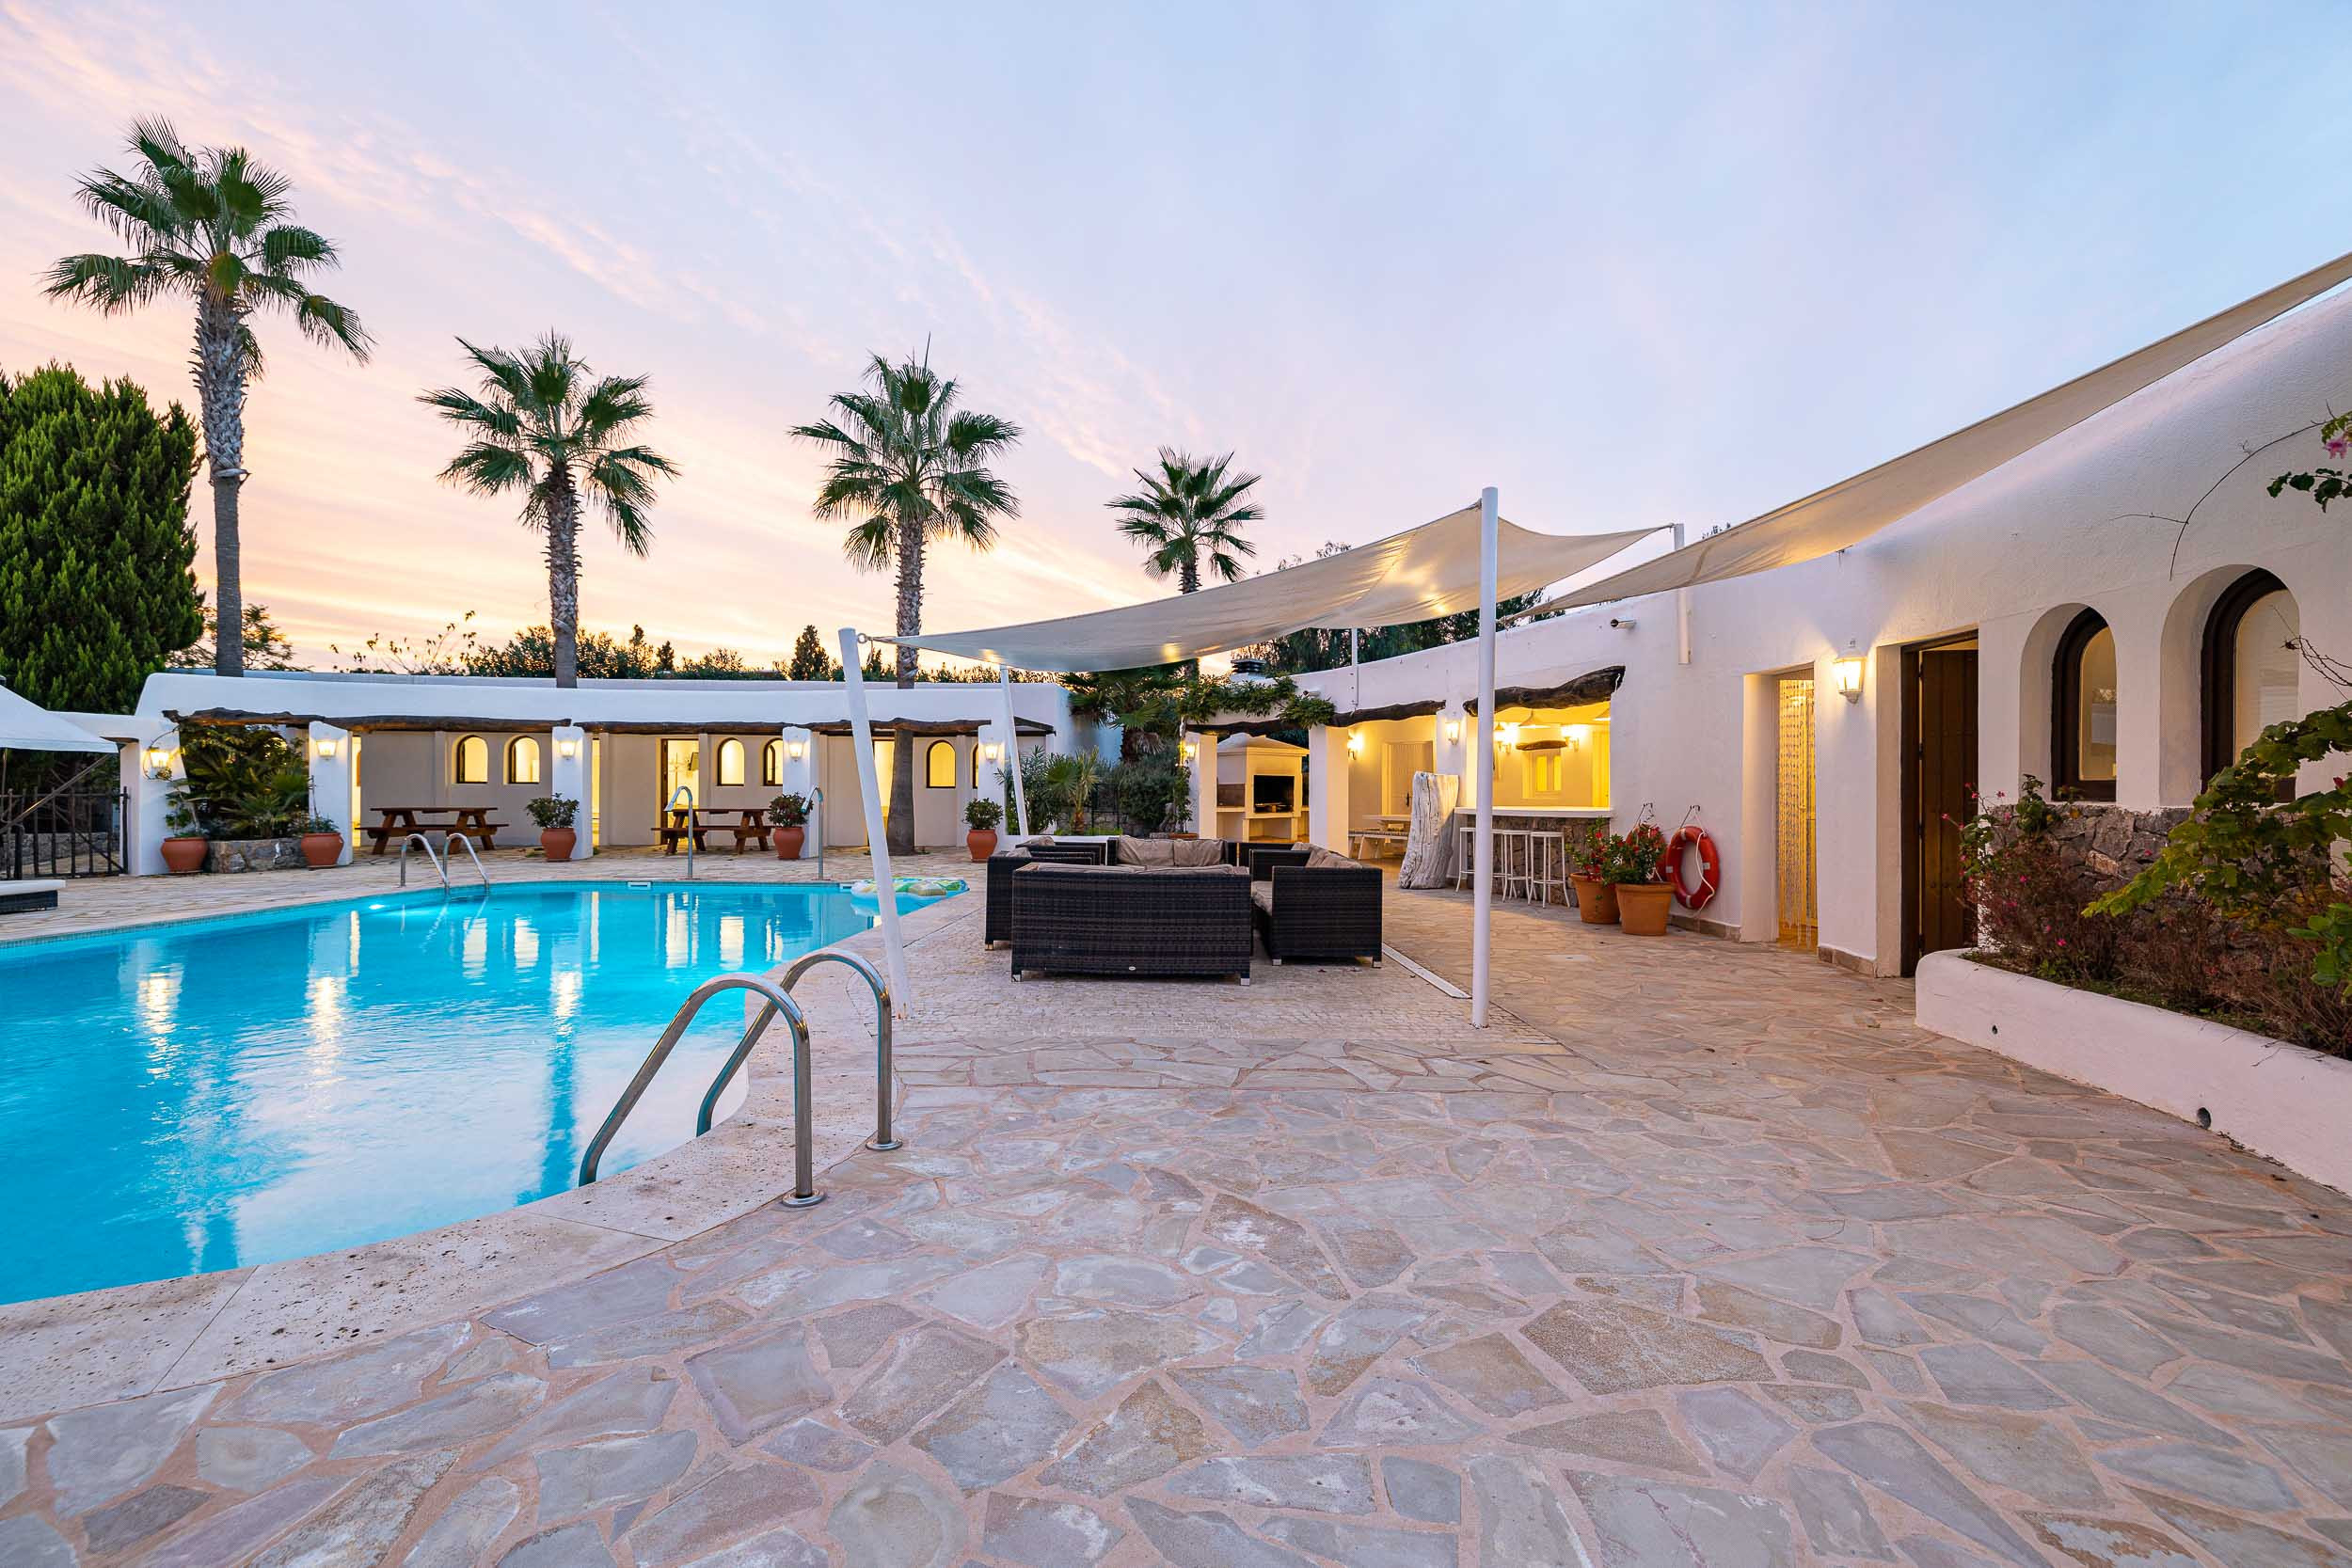 La Casa Cova est une villa spacieuse avec plusieurs pièces extérieures, pour accueillir de grands groupes visitant Ibiza.